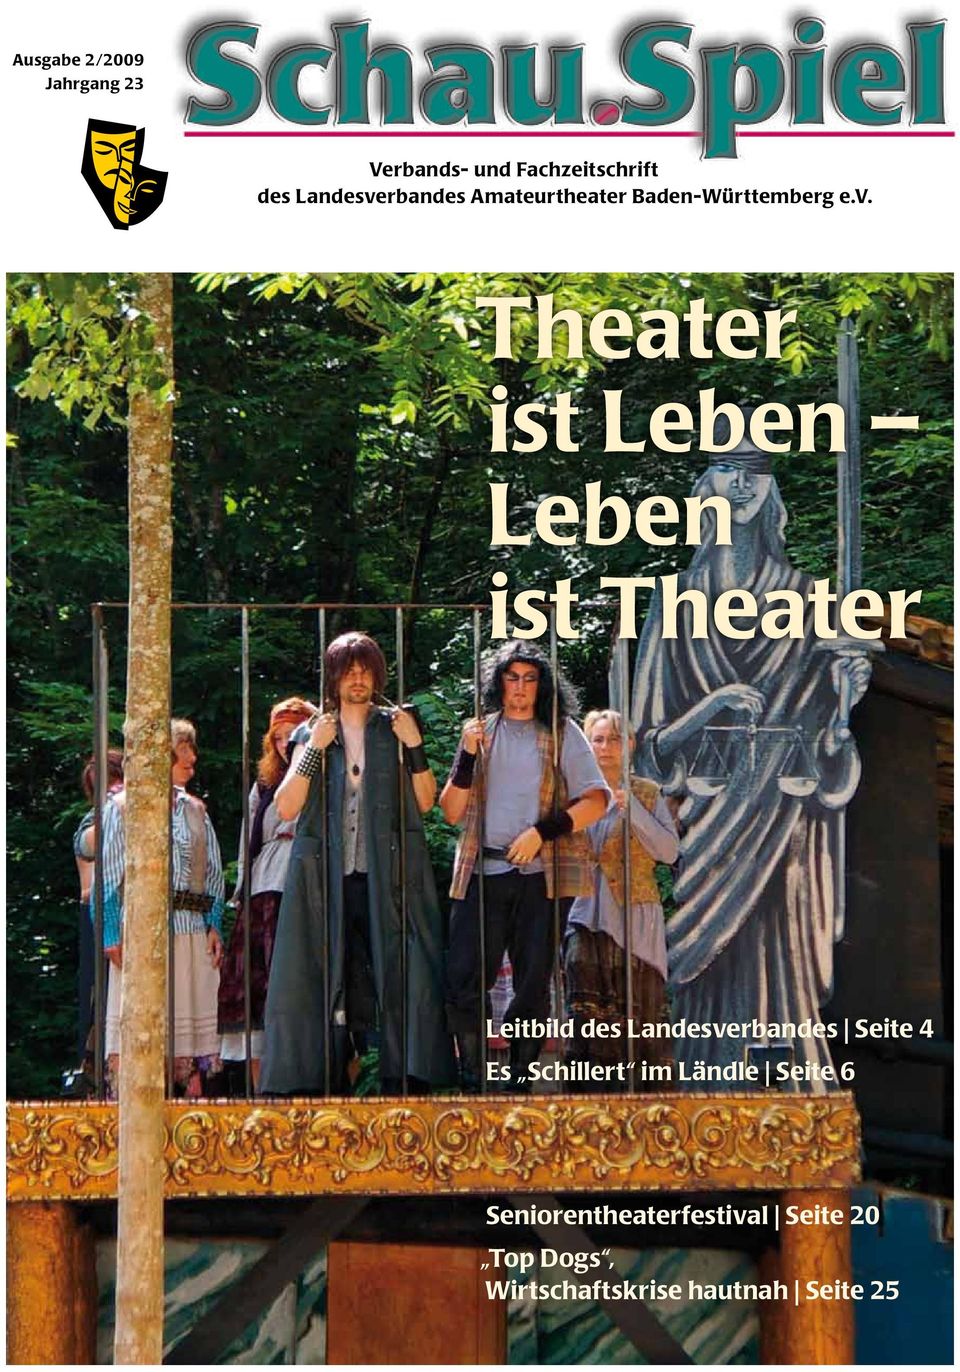 rbandes Amateurtheater Baden-Württemberg e.v.